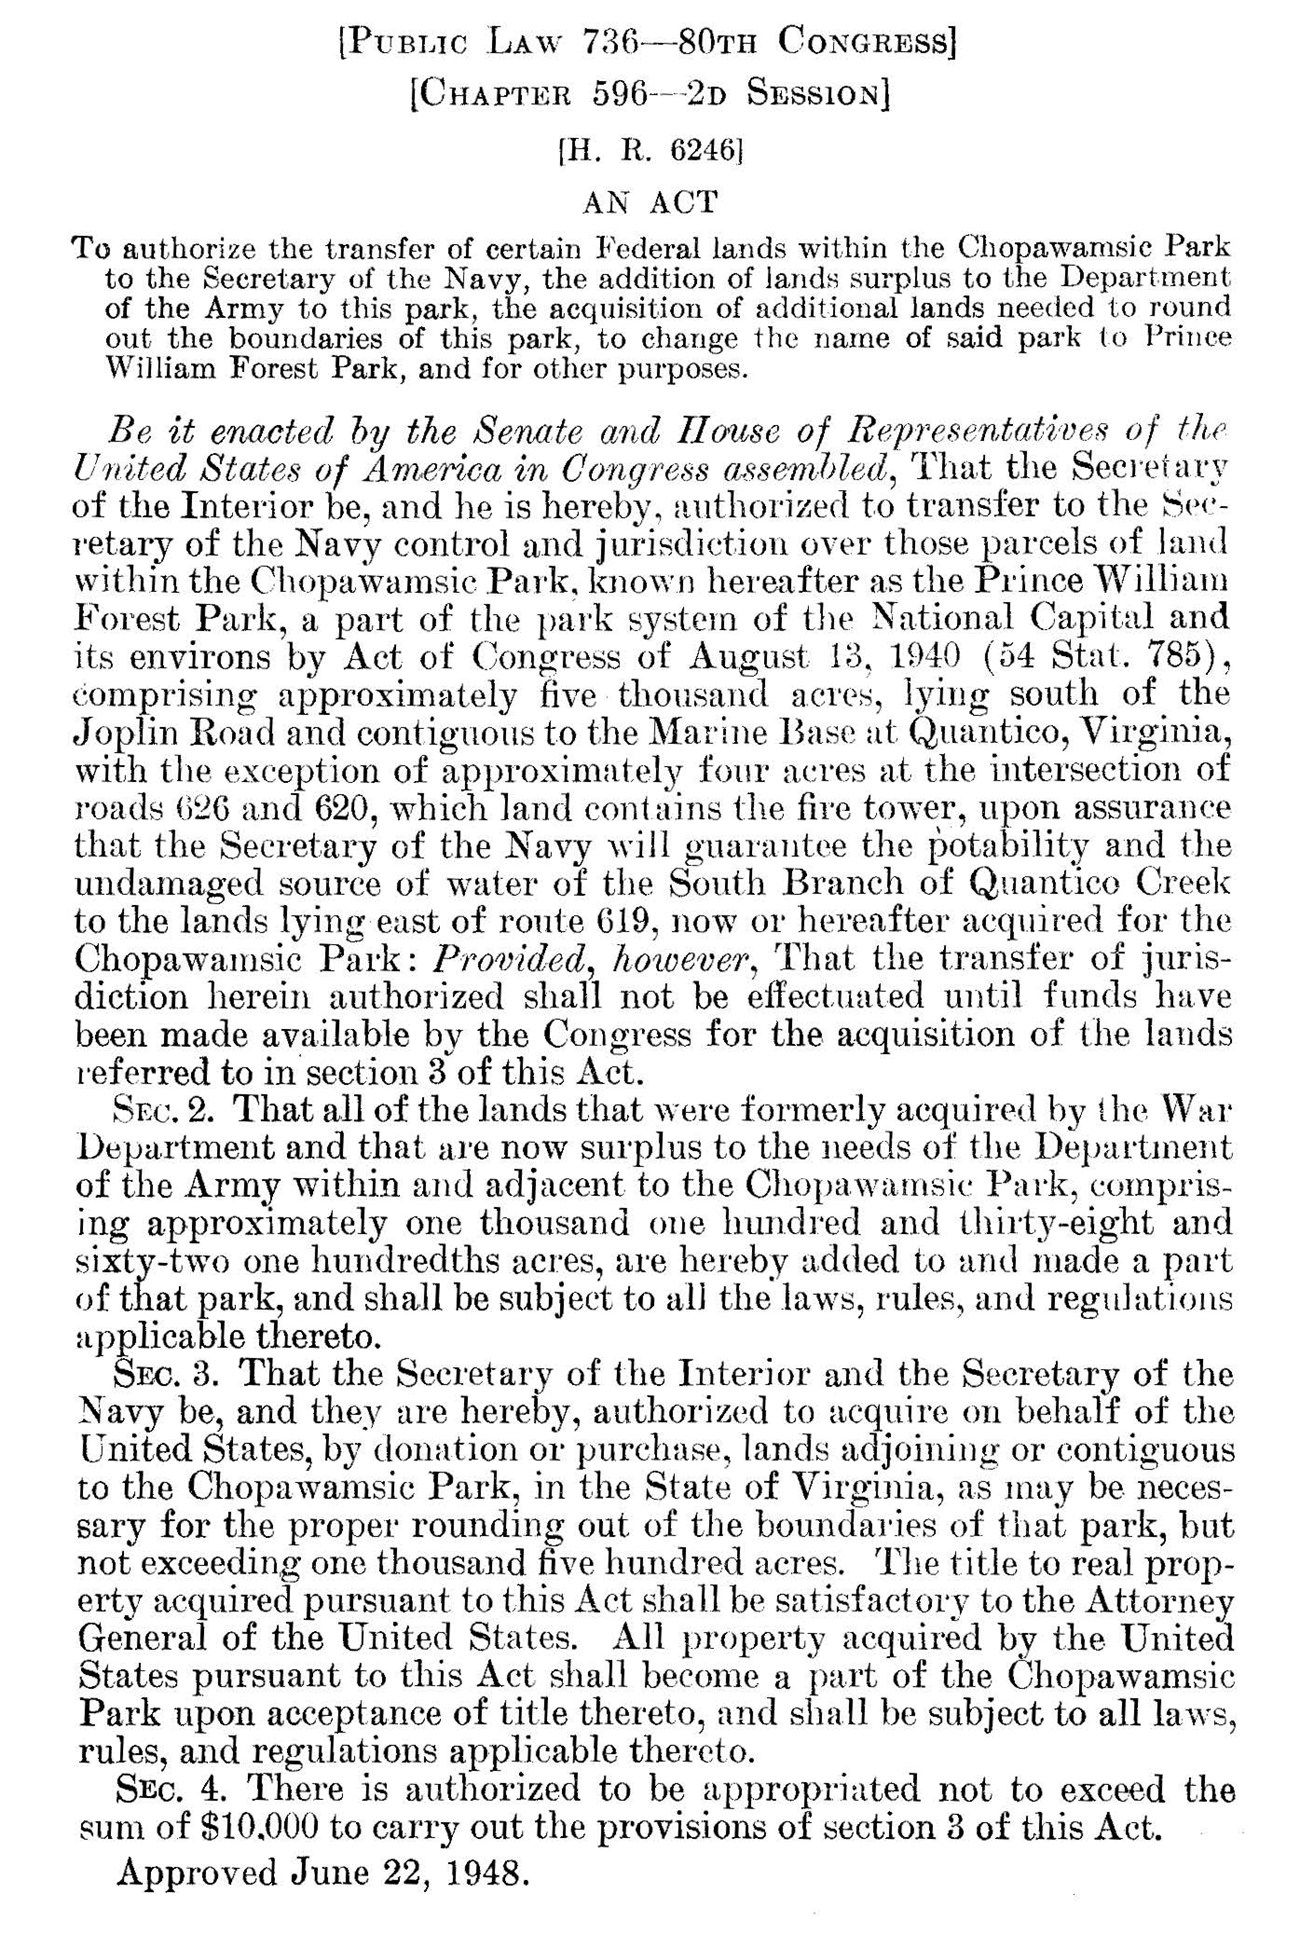 1948 Renaming Legislation for Prince William Forest Park